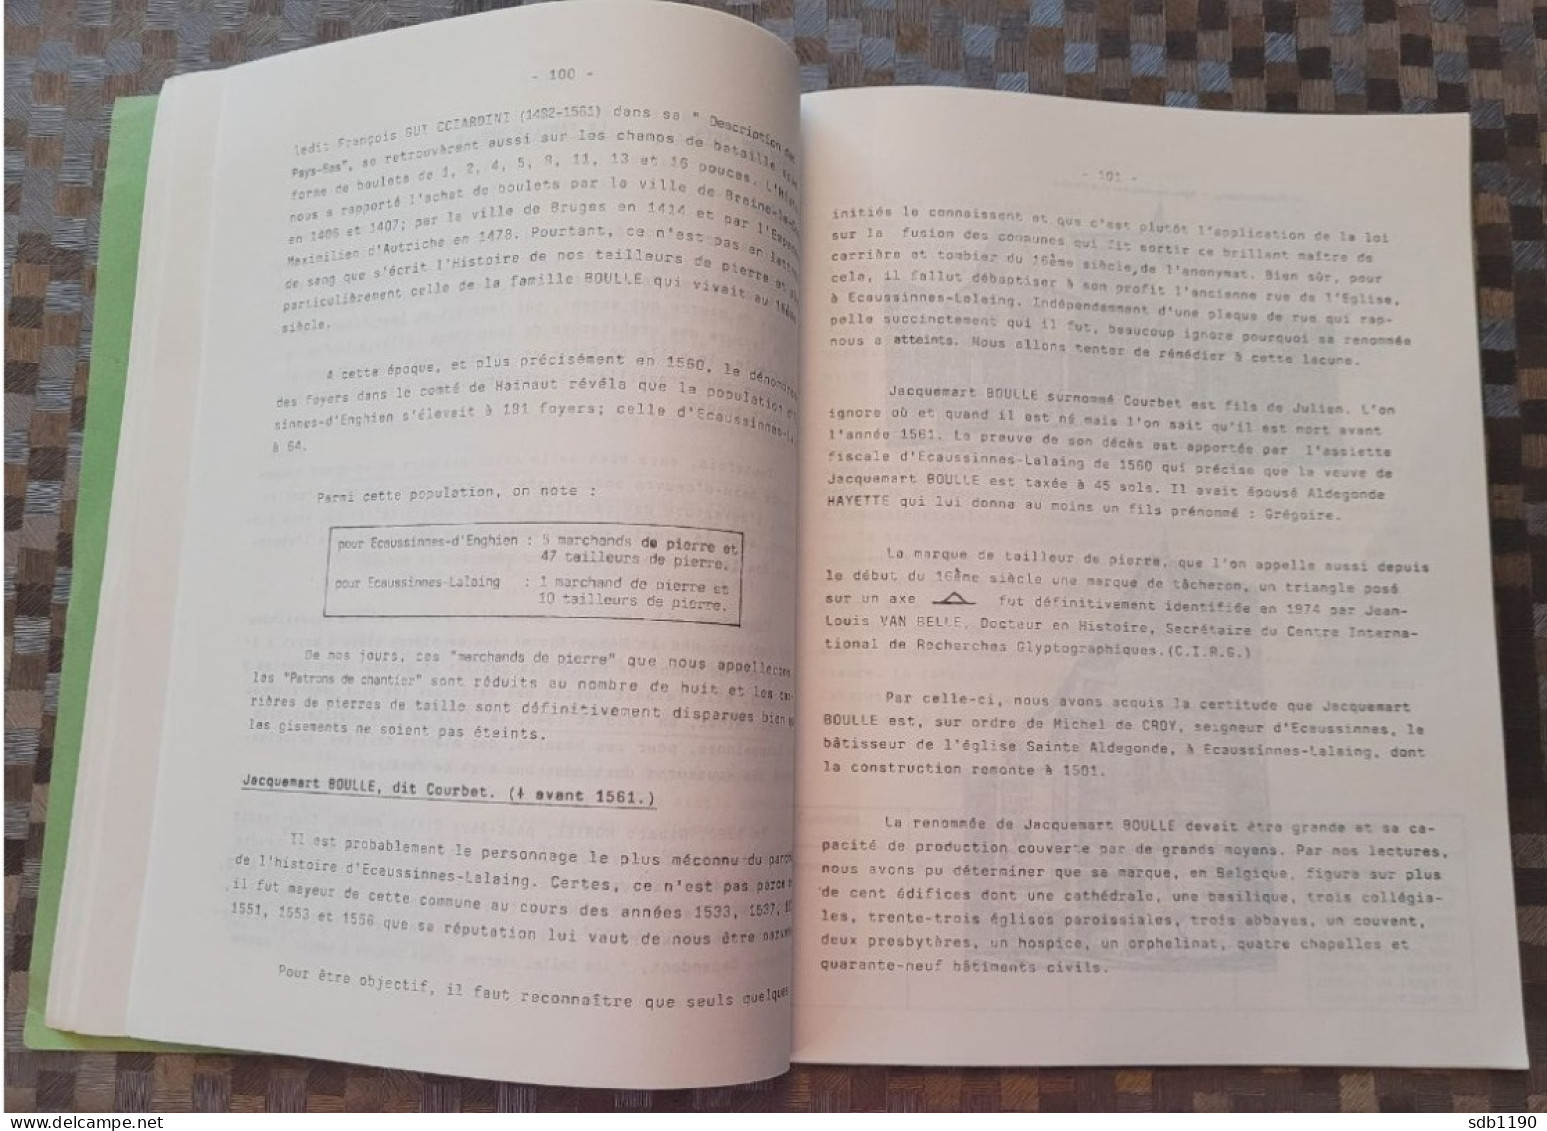 Le Val Vert - Bulletin trimestriel du Cercle d'information et d'histoire locale des Ecaussines et Henripont 4è trim 1987